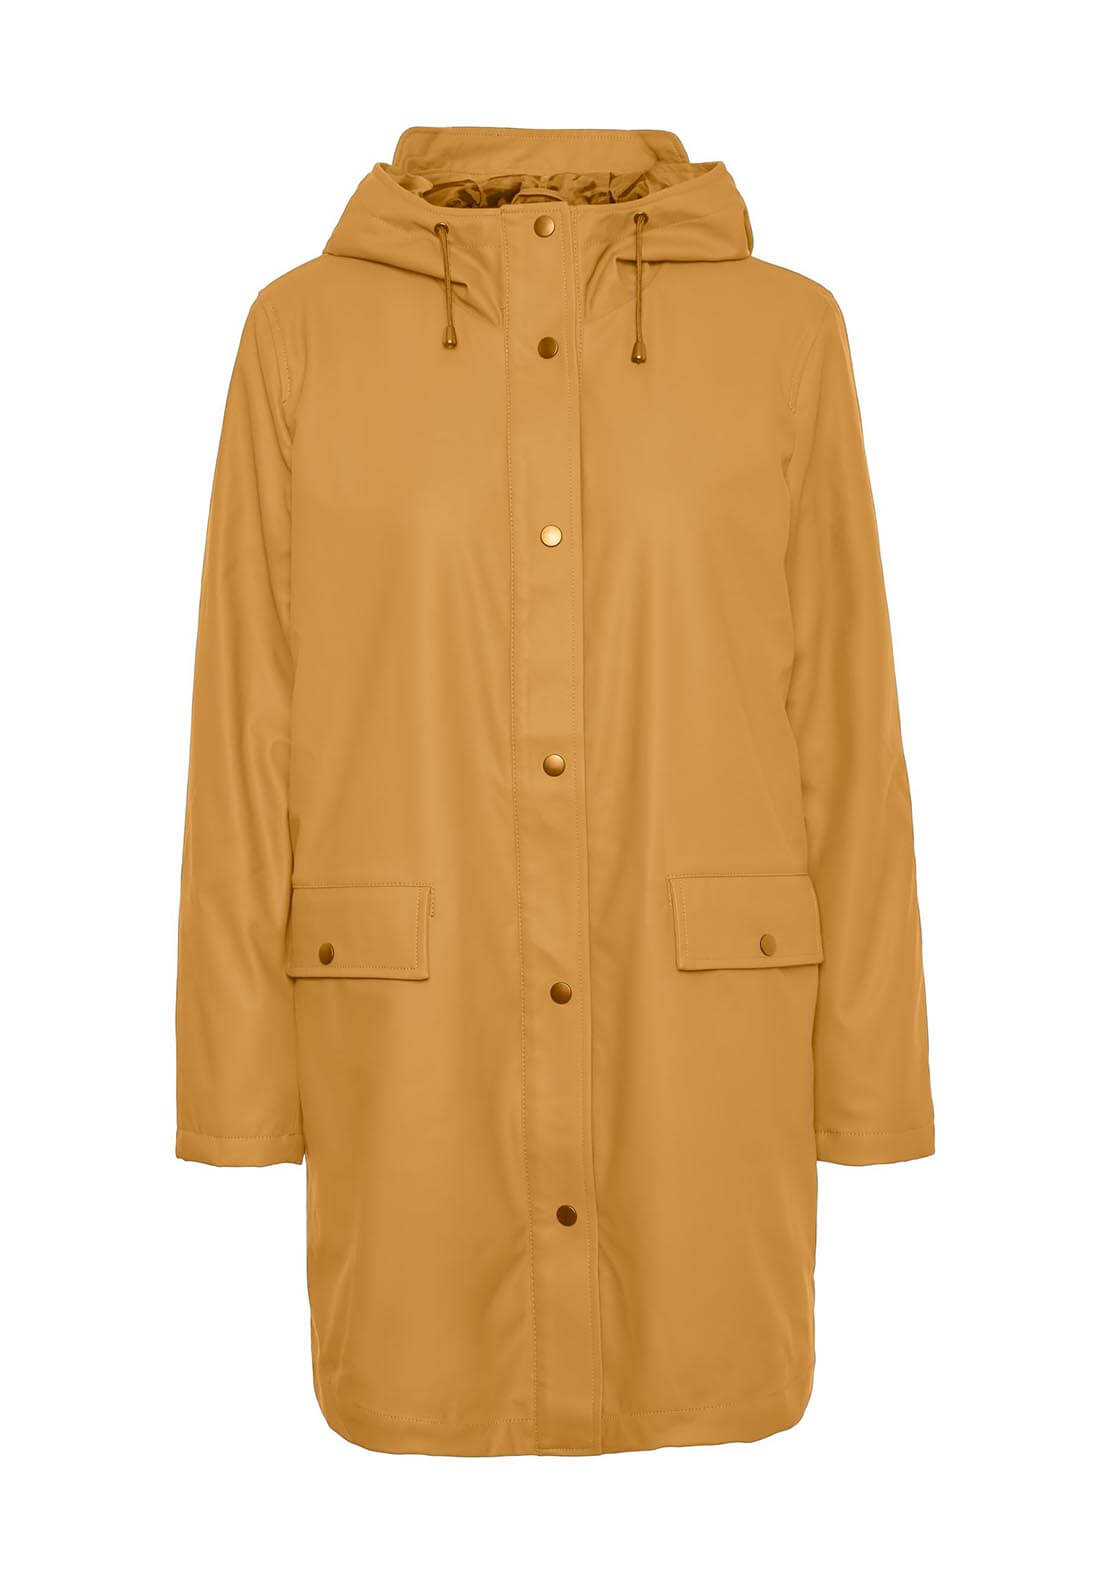 Vero Moda Mvasta Rain Coat - Amber Gold 6 Shaws Department Stores